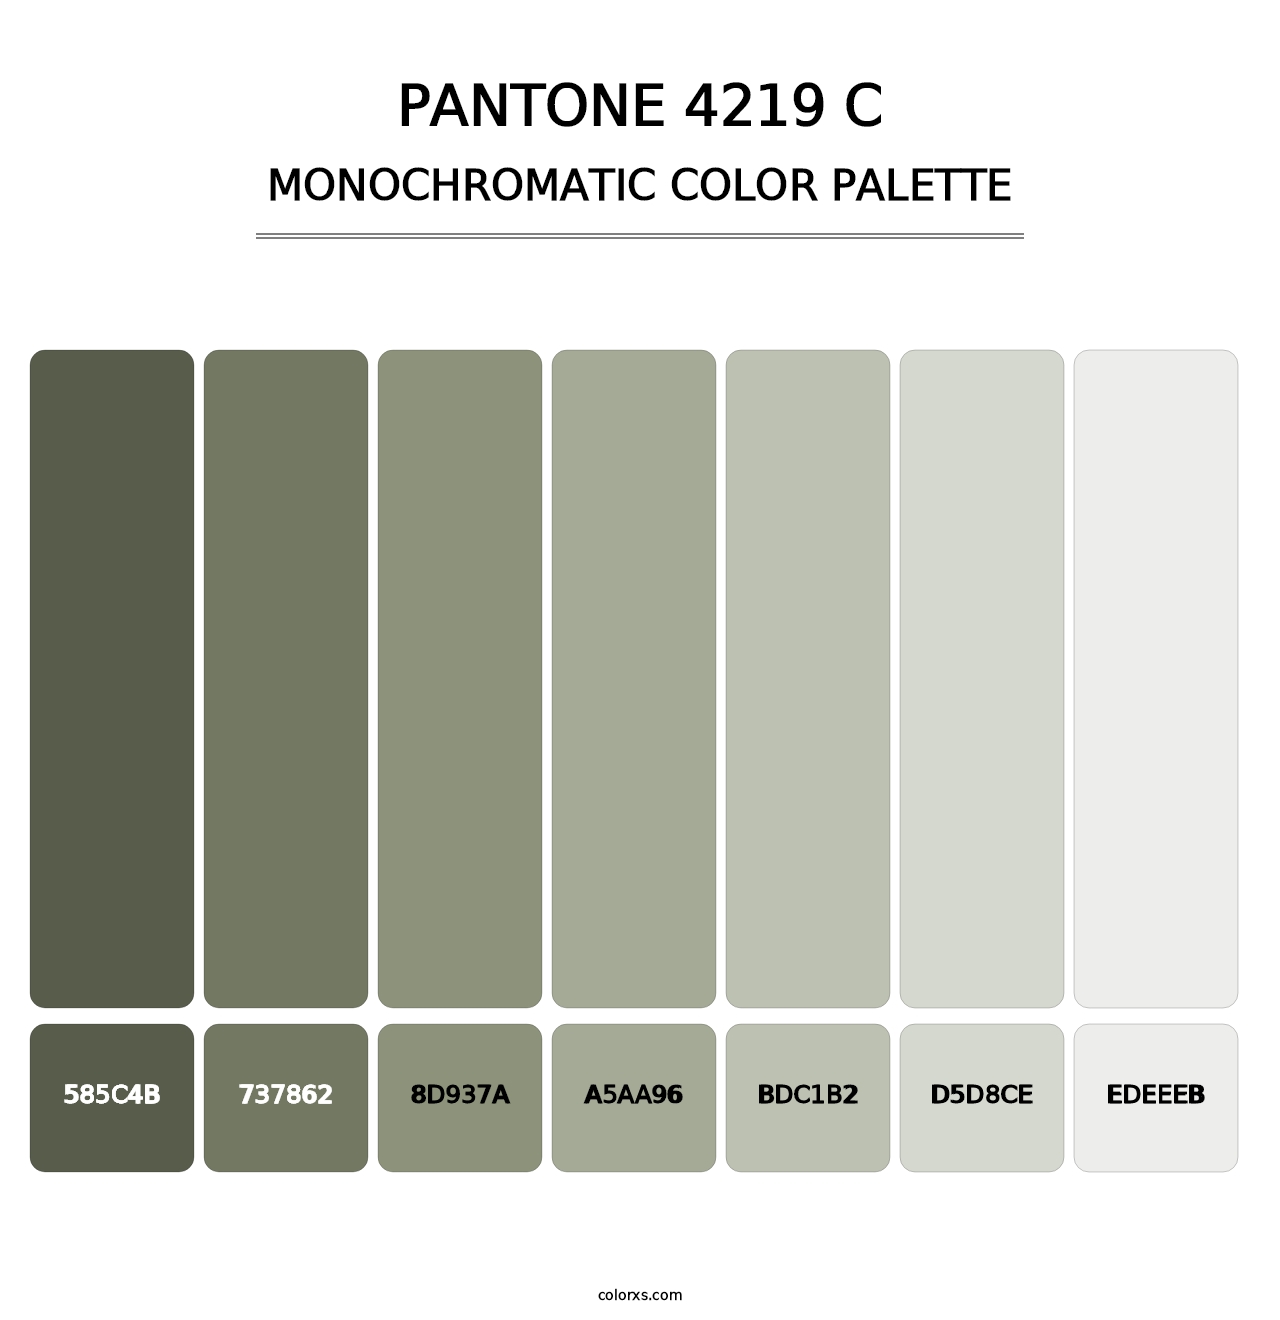 PANTONE 4219 C - Monochromatic Color Palette